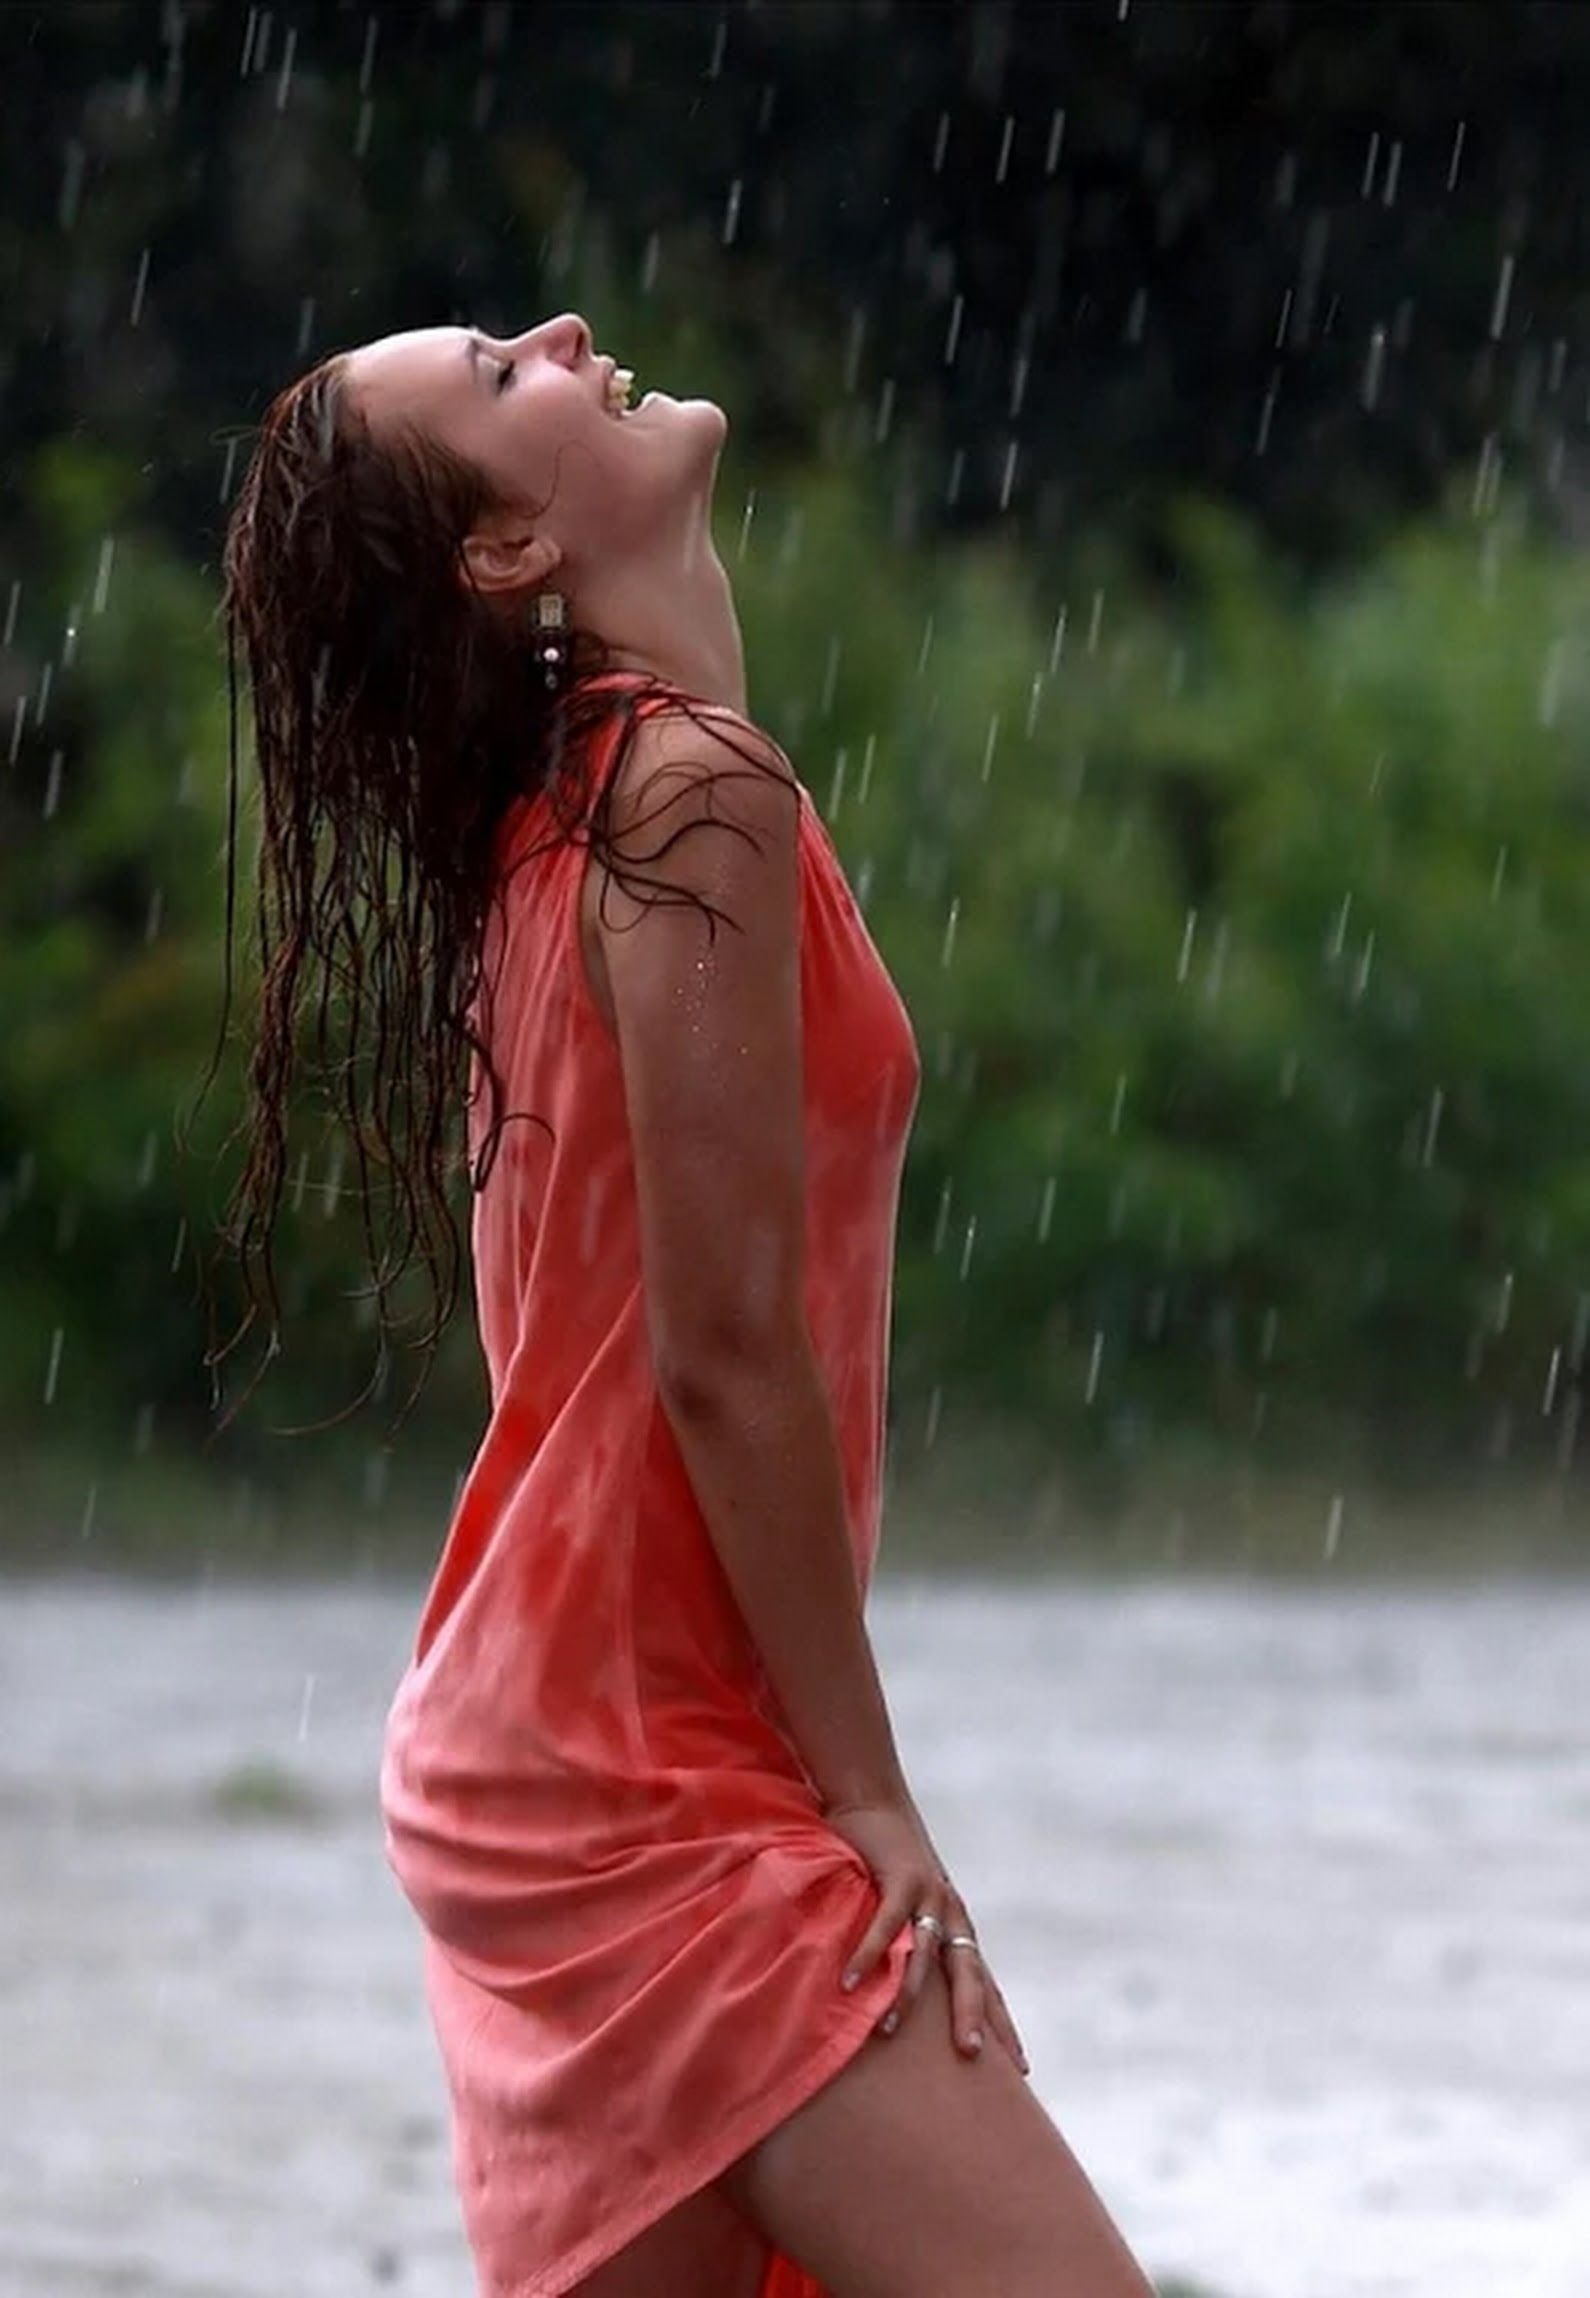 Мокрая майка видео. Девушка под дождем. Красивая девушка под дождем. Девушка в мокром платье. Девочка под дождем.